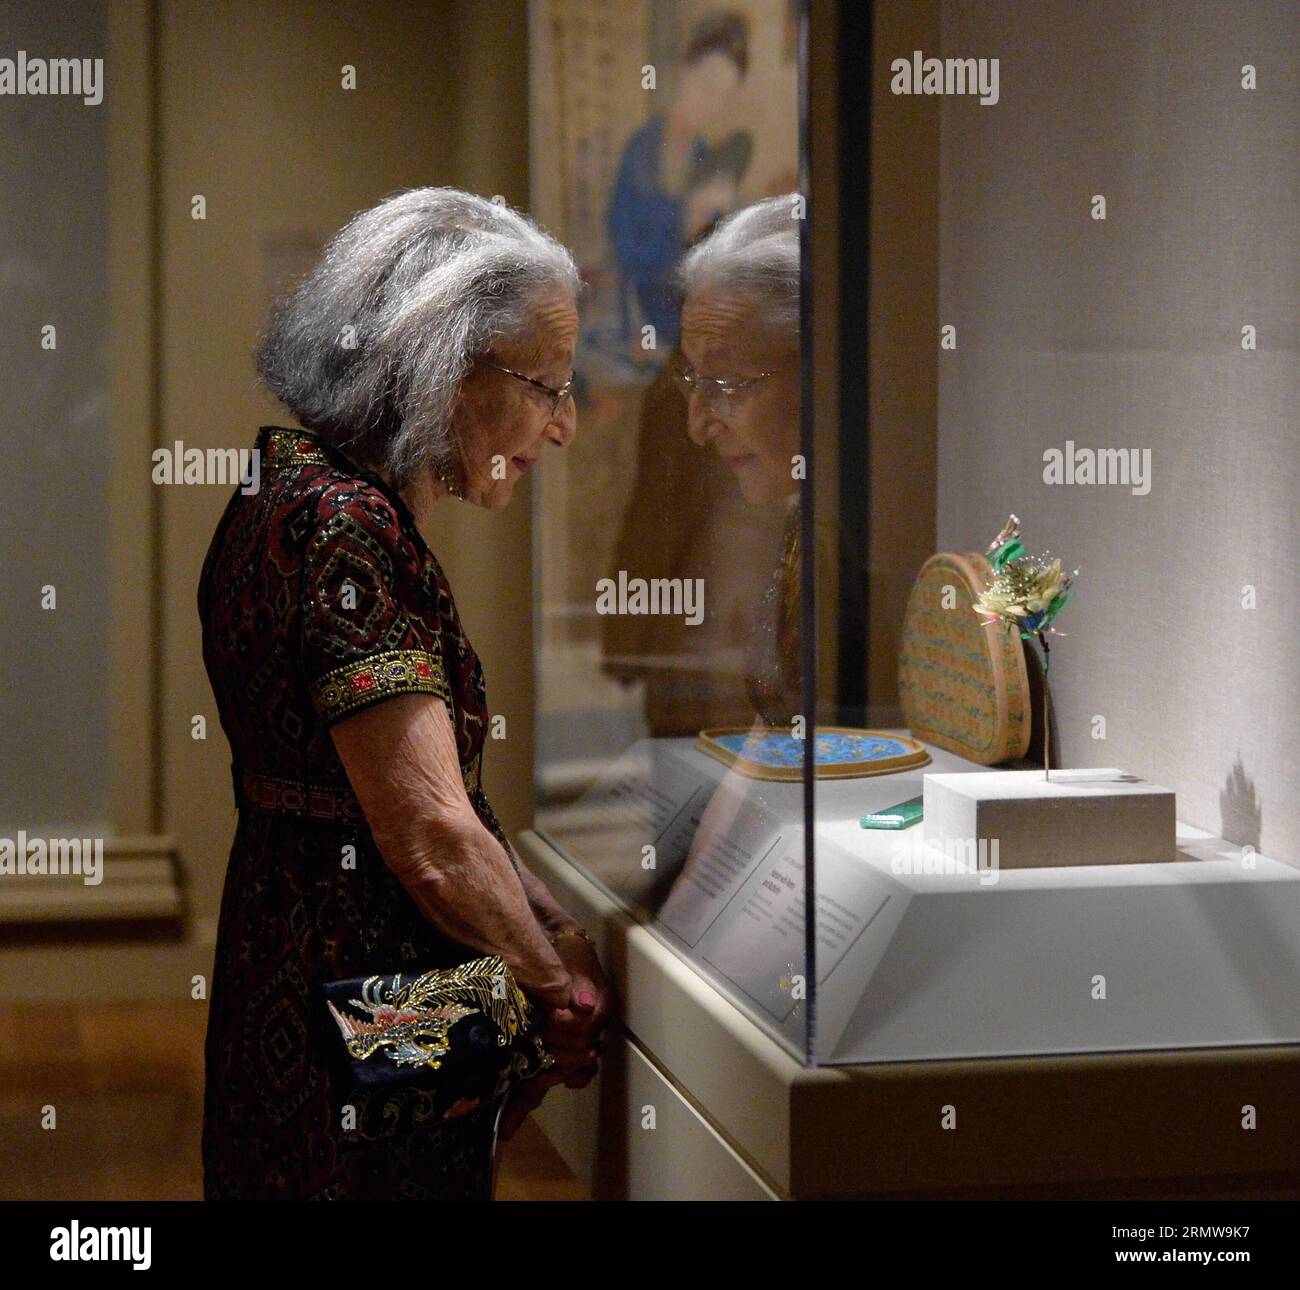 (141015) -- WASHINGTON D.C., 14 octobre 2014 -- Une femme regarde un objet exposé lors de la présentation d'une exposition au Virgina Museum of Fine Arts aux États-Unis le 14 octobre 2014. L'exposition Cité interdite - trésors impériaux du Musée du Palais de Pékin sera ouverte au public du 18 octobre 2014 au 11 janvier 2015. ) (yc) US-CHINA-FORBIDDEN CITY-EXHIBITION BaoxDandan PUBLICATIONxNOTxINxCHN Washington D C OCT 14 2014 une femme regarde l'objet exposé lors de l'avant-première de l'exposition AU Virginia Museum of Fine Arts aux États-Unis OCT 14 2014 l'exposition pour Banque D'Images